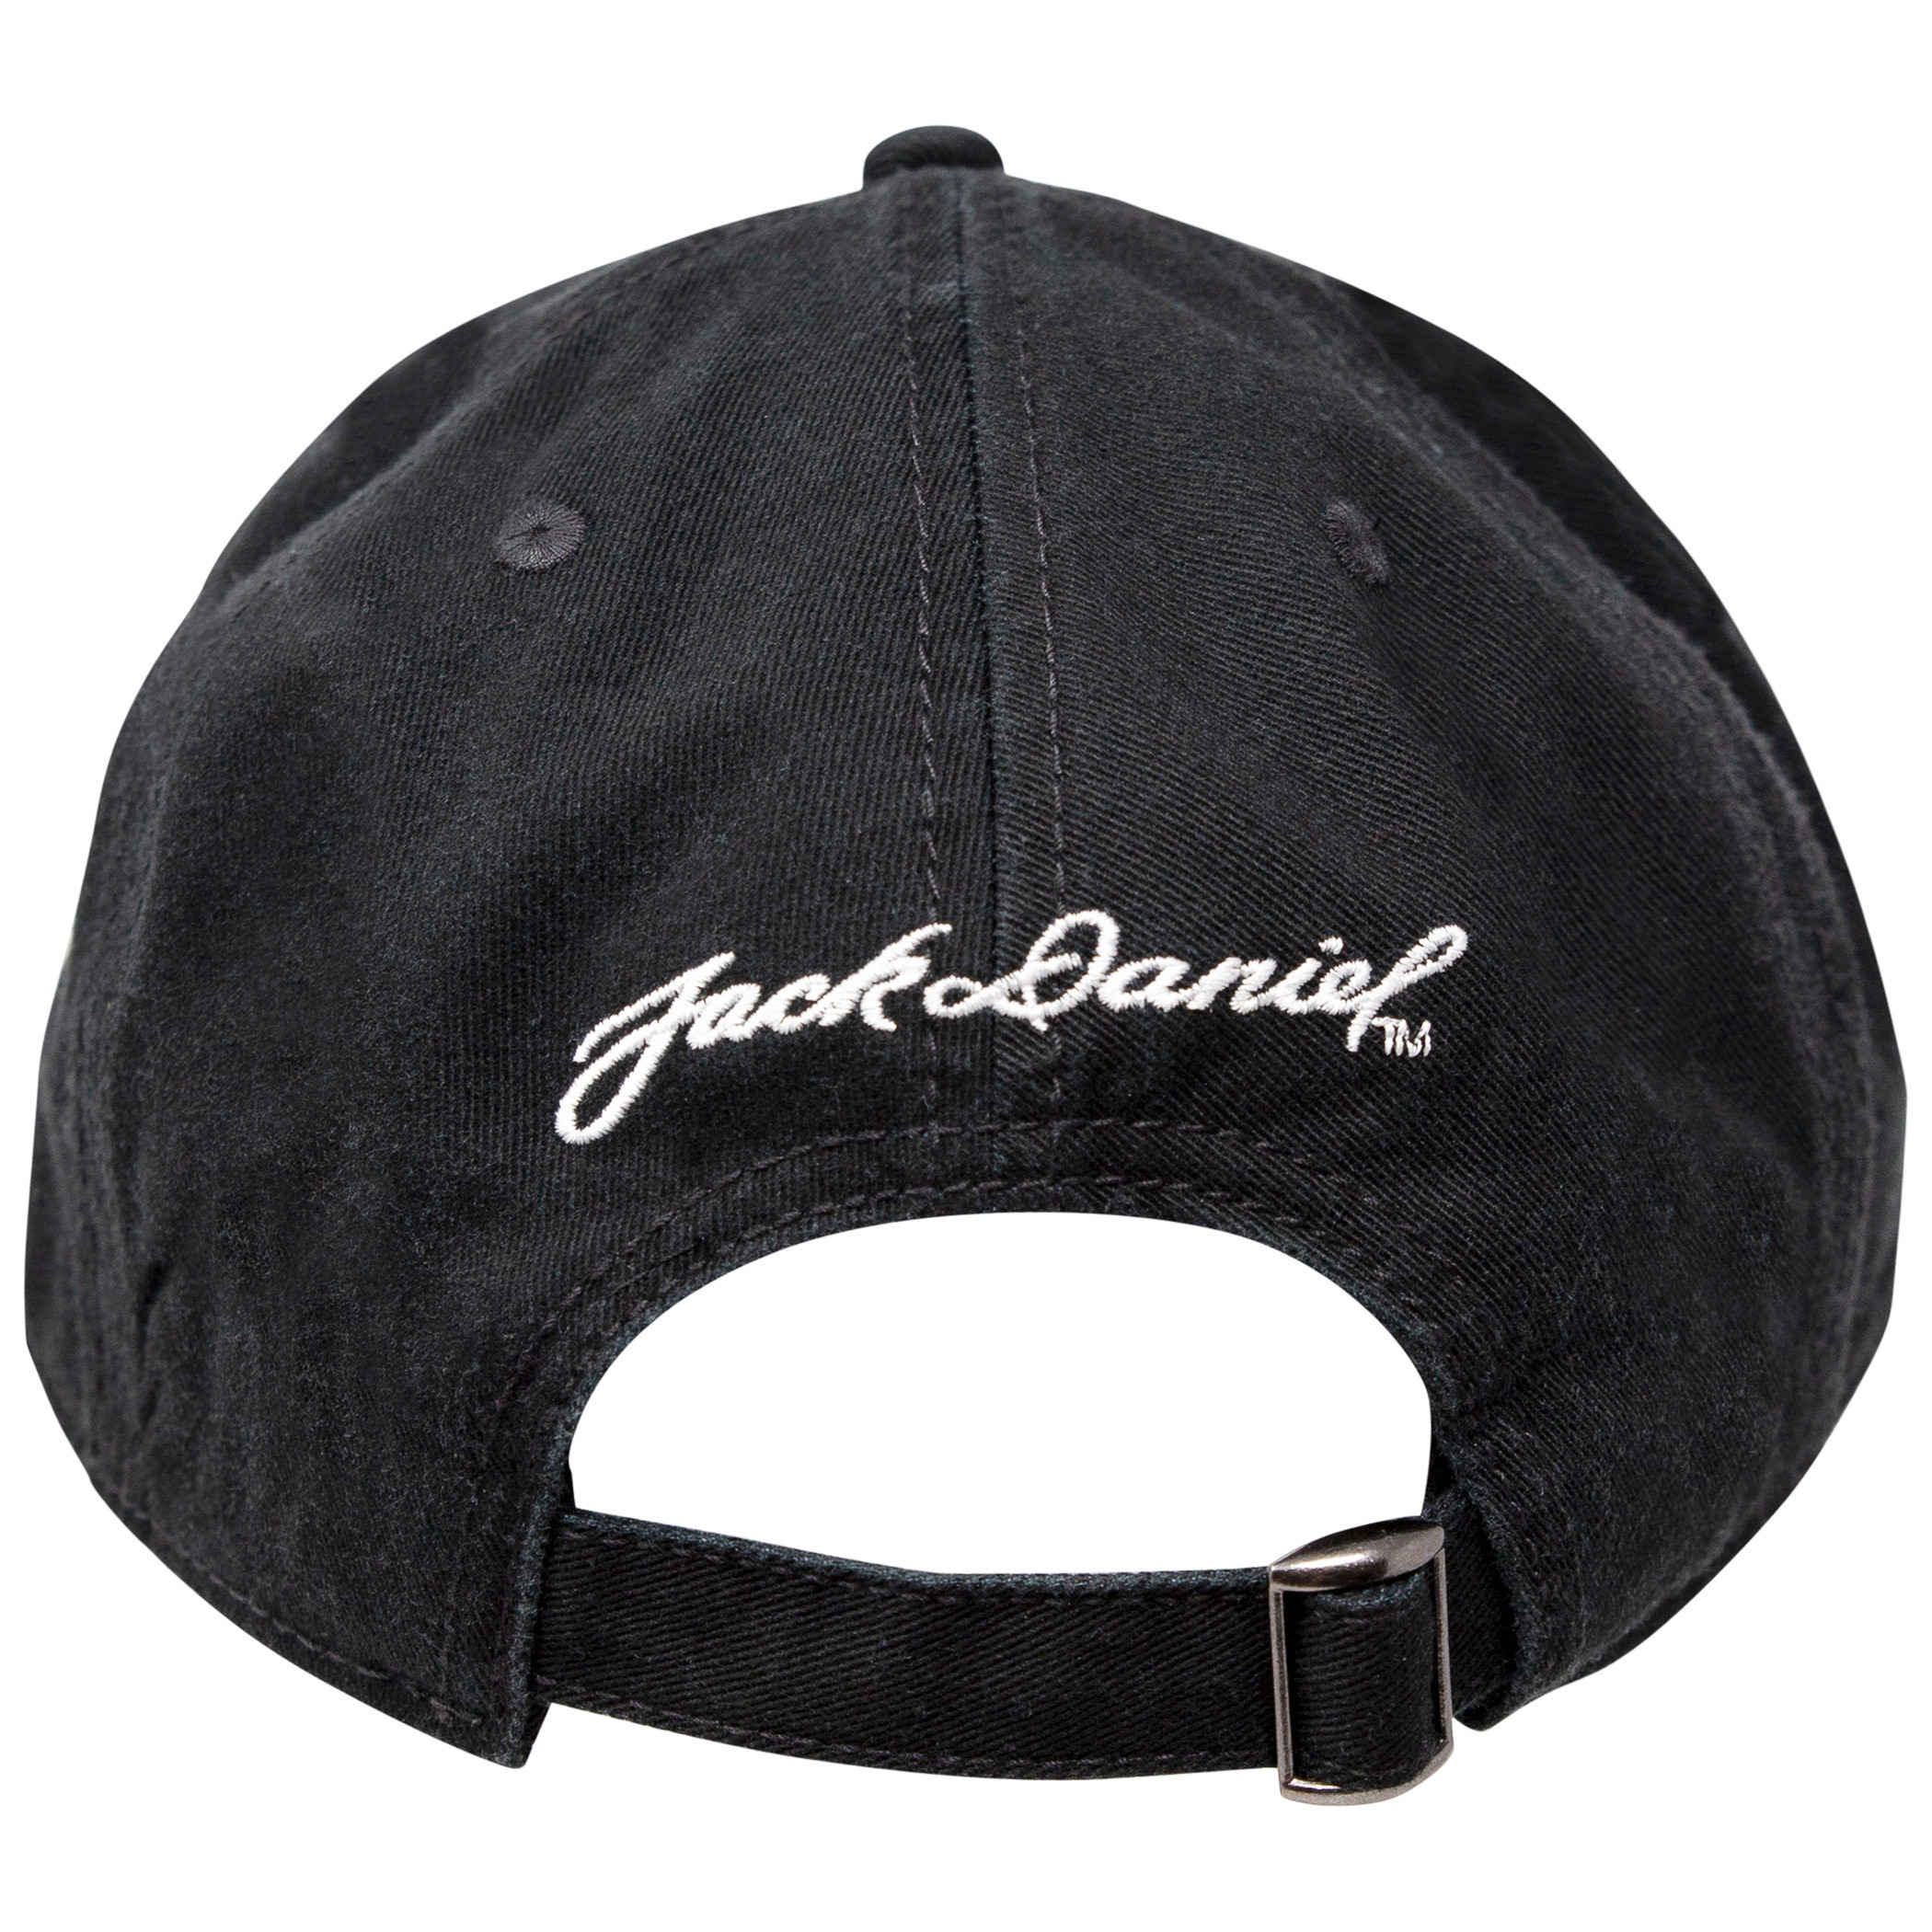 Jack Daniels Old No. 7 Cotton Twill Black Hat